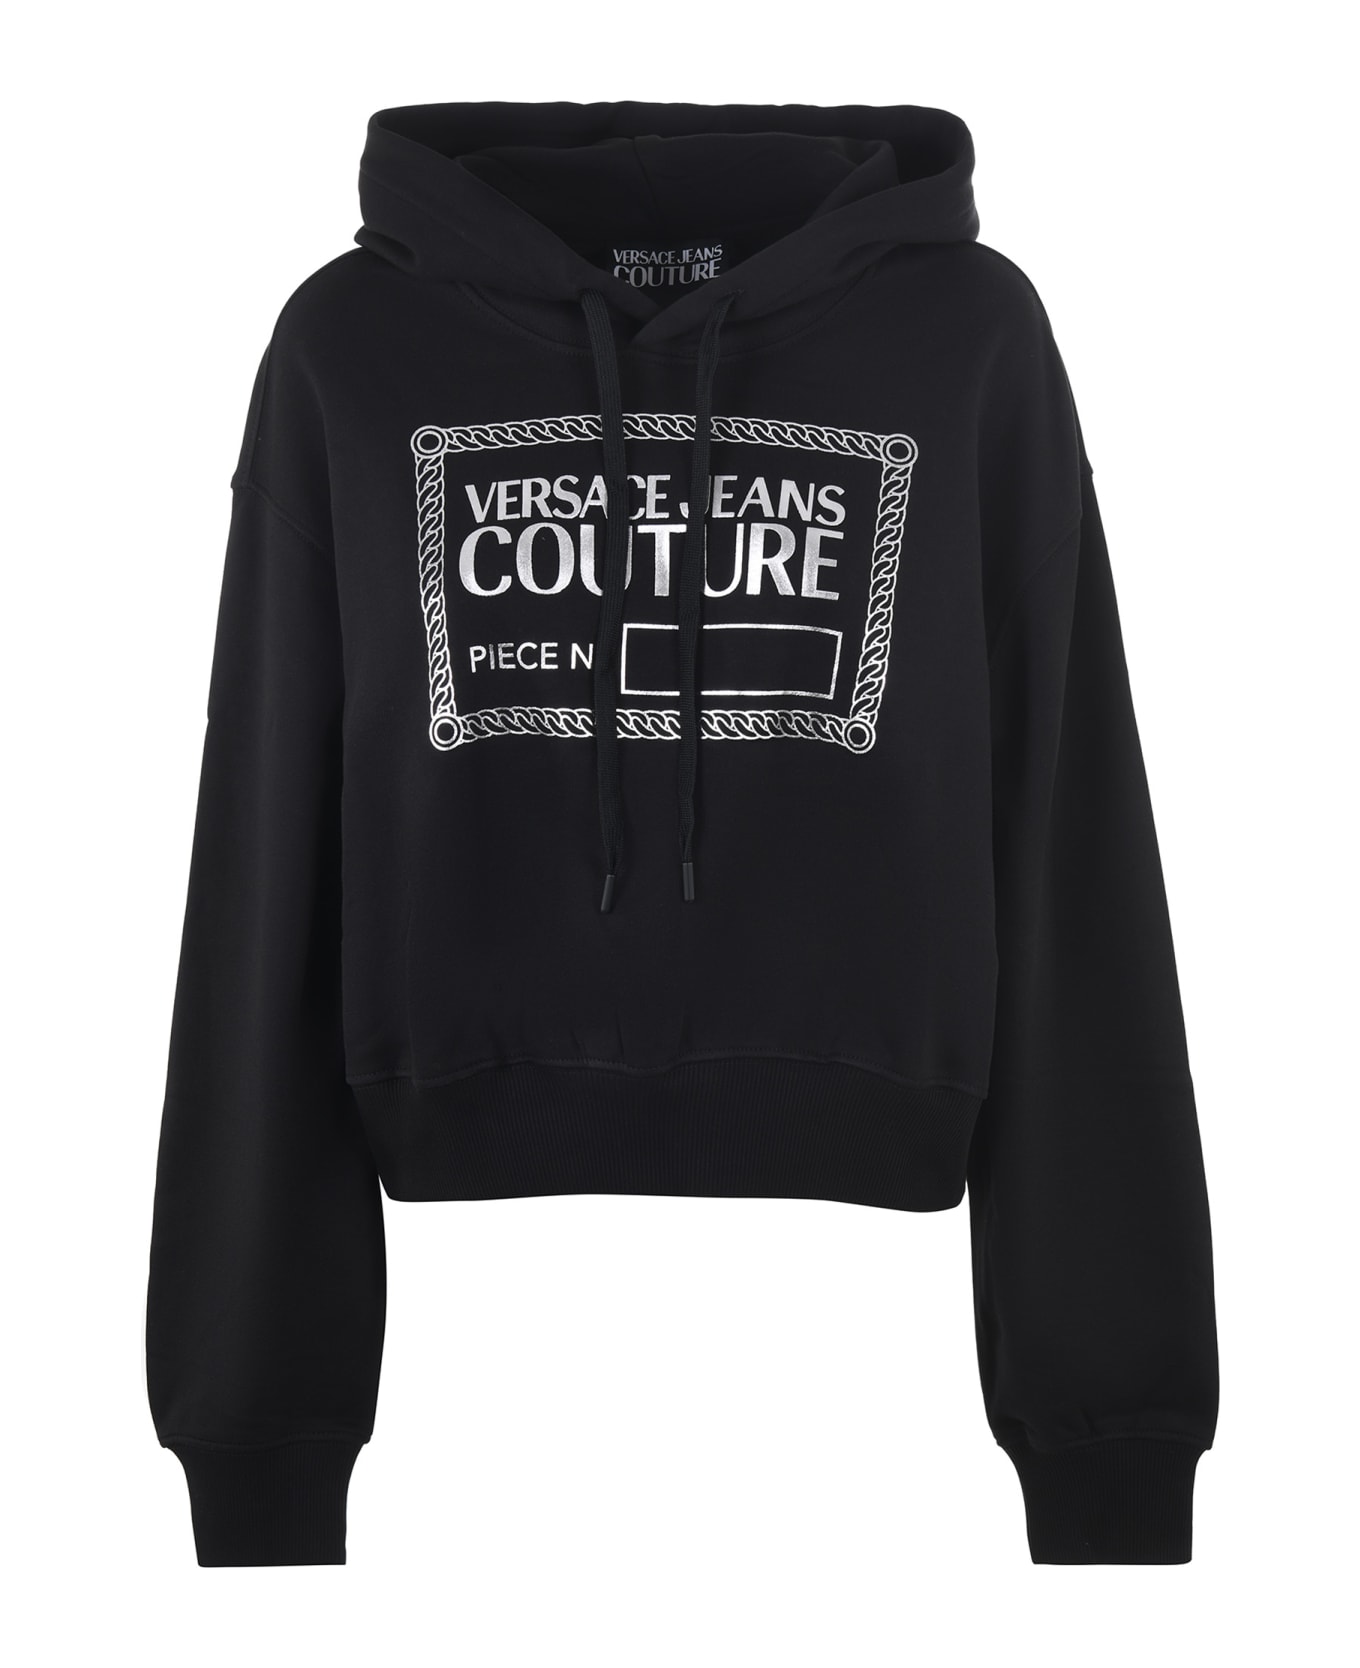 Versace Jeans Couture Crop Sweatshirt - Nero